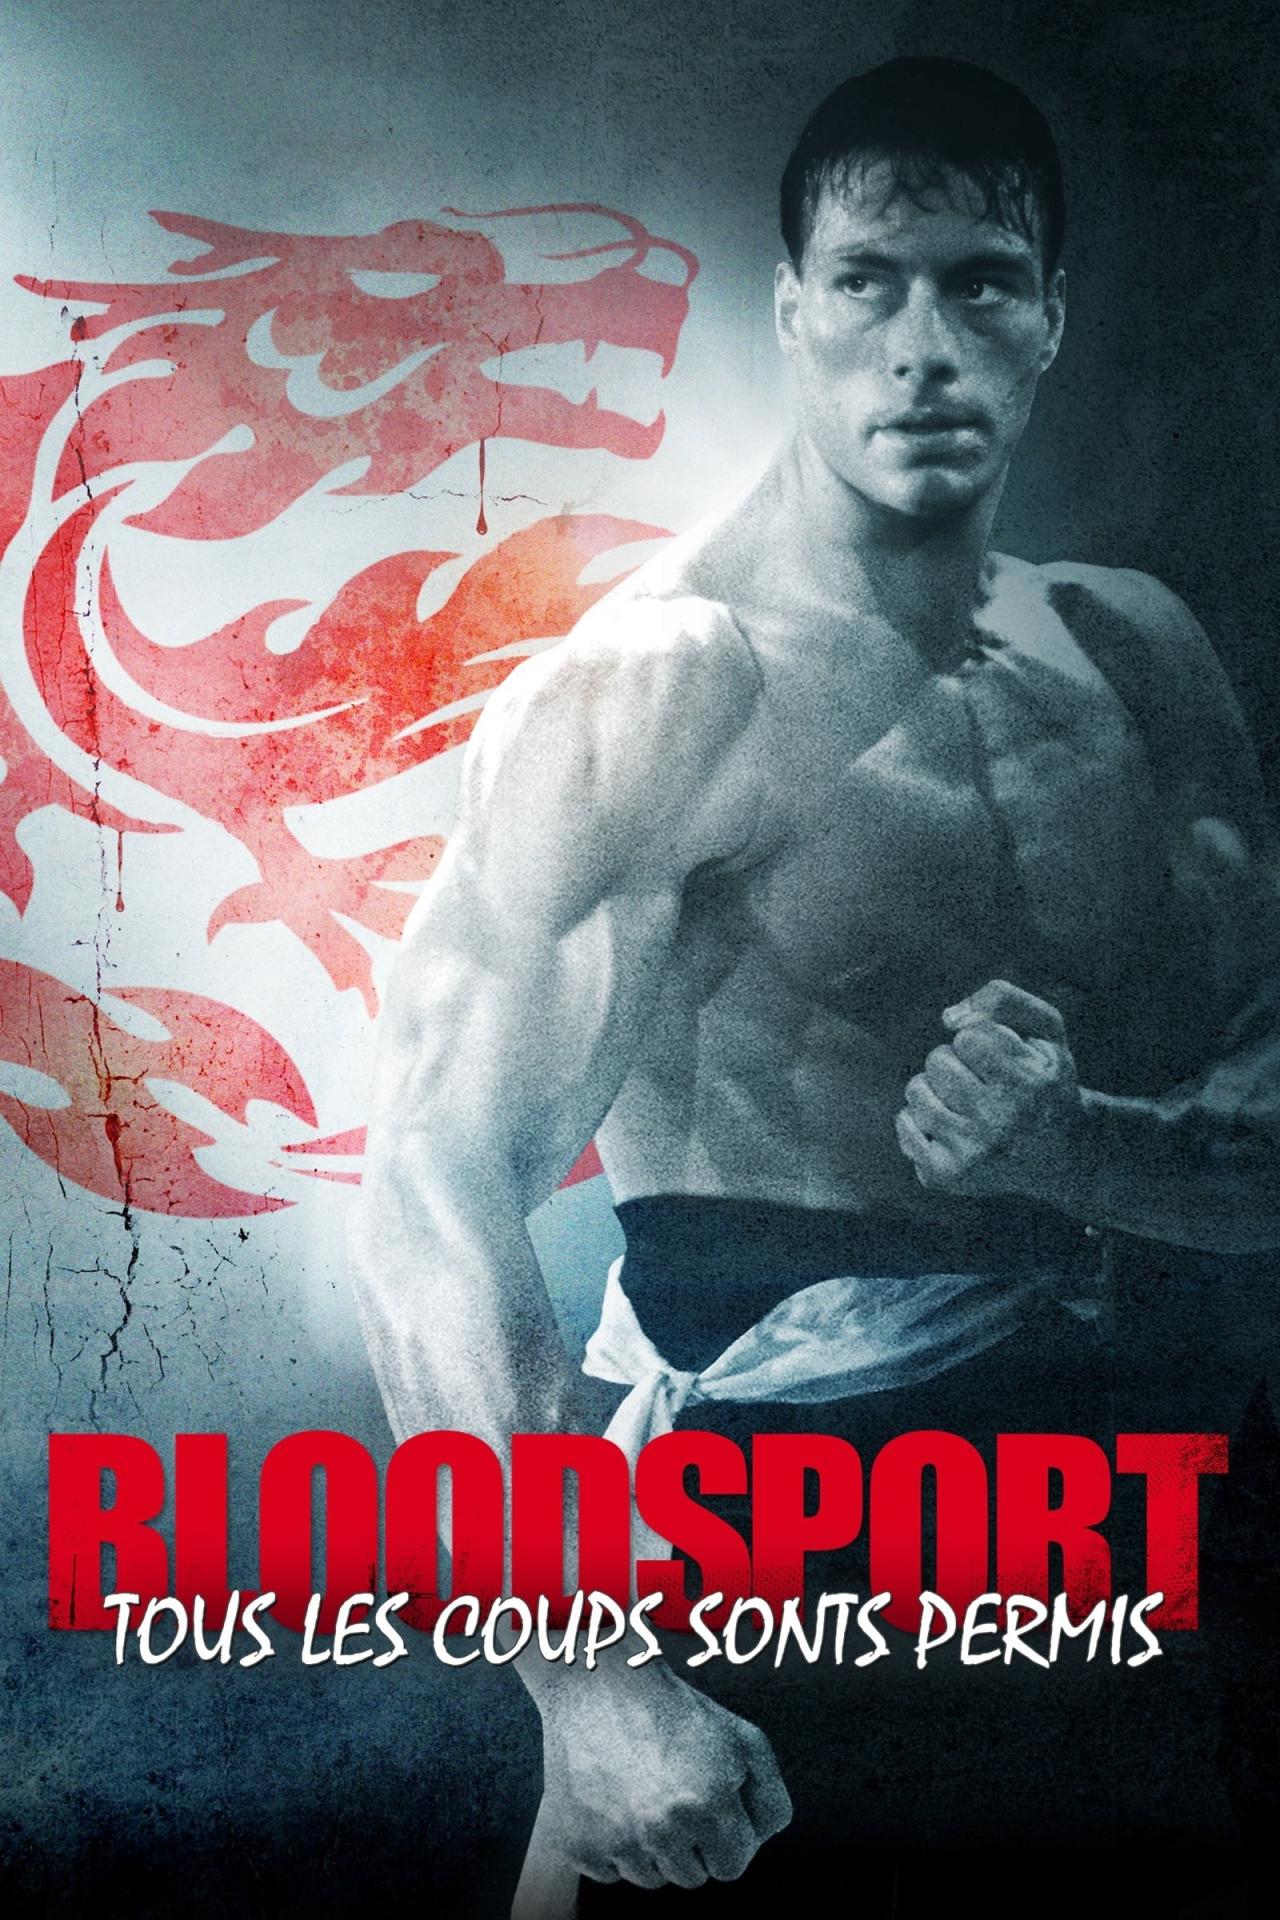 Bloodsport, tous les coups sont permis est-il disponible sur Netflix ou autre ?